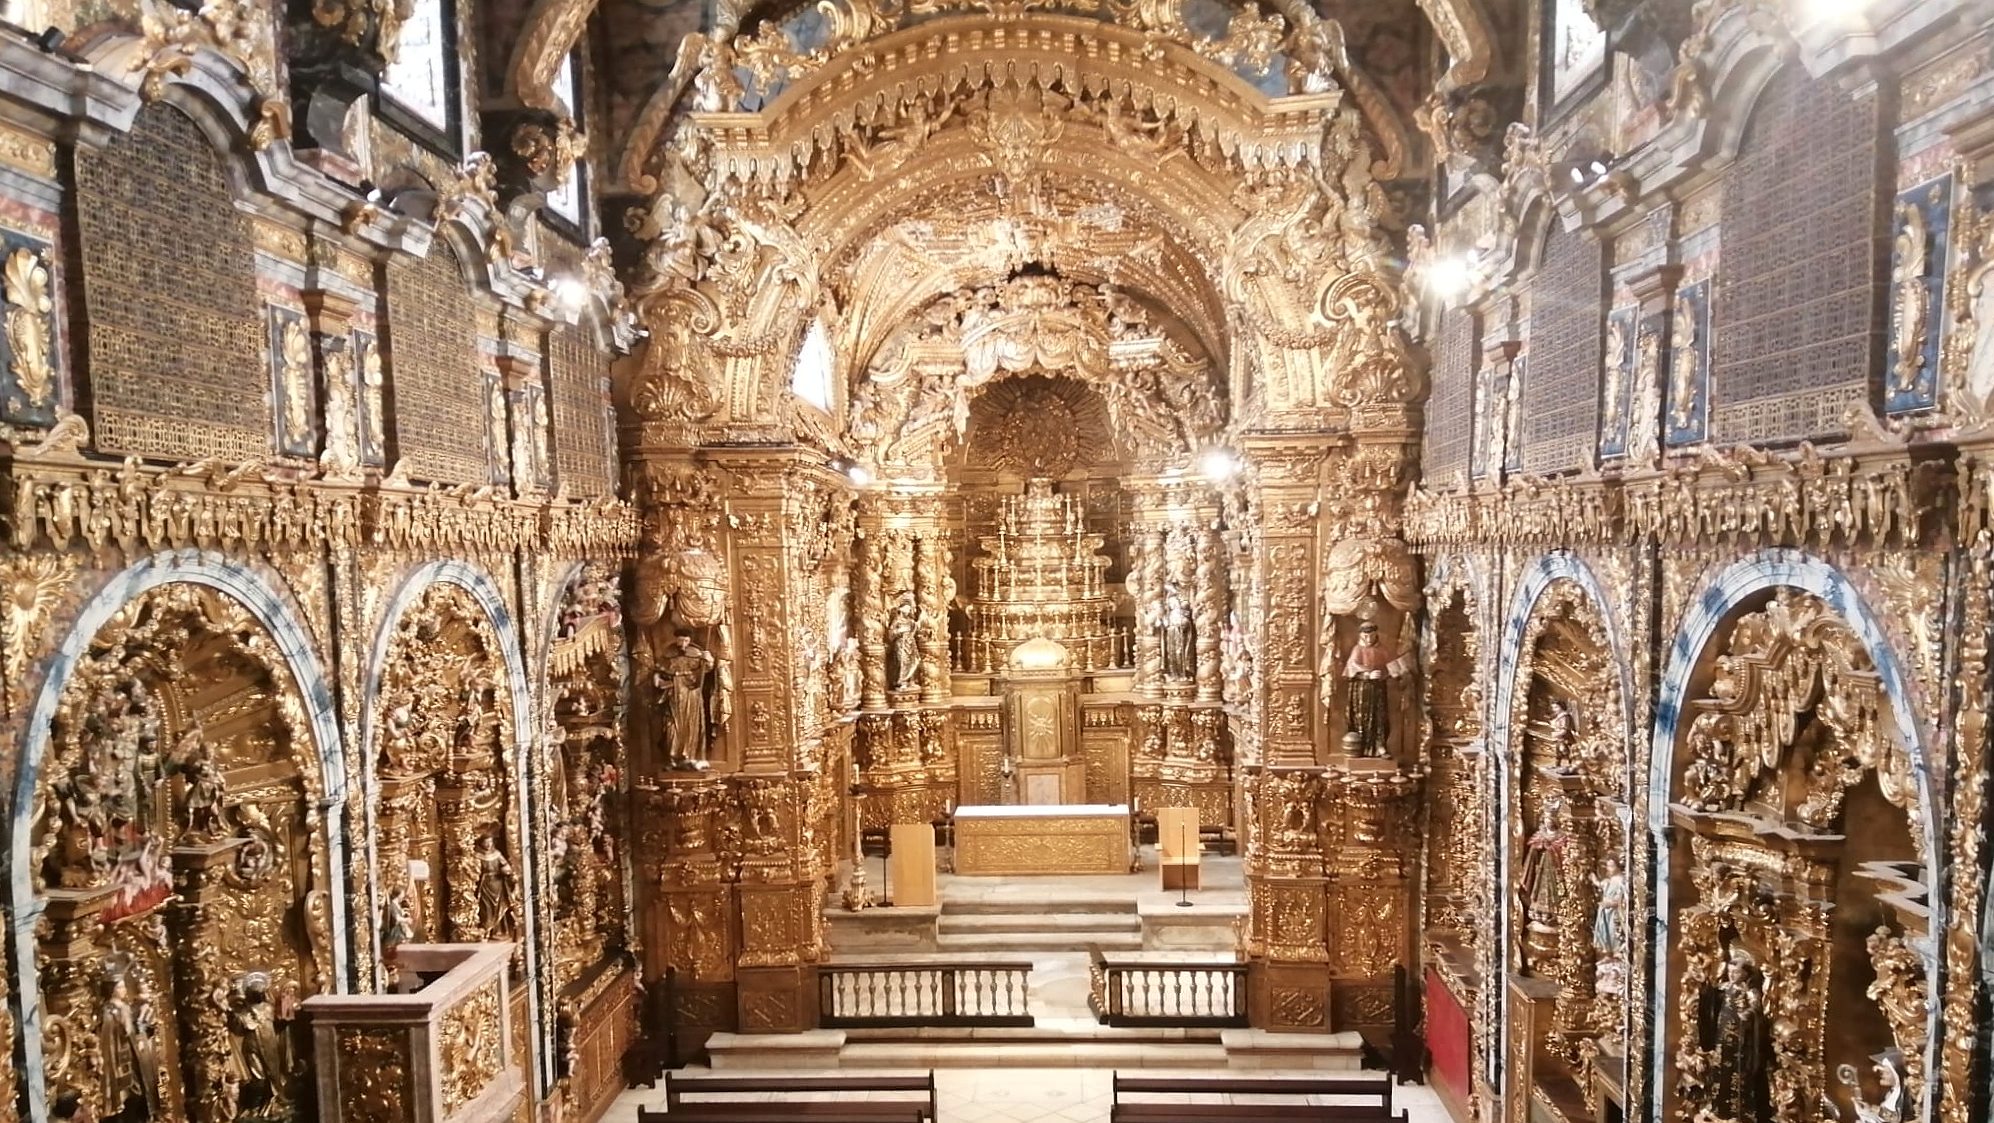 Considerada um dos maiores exemplos de igrejas forradas a ouro, a Igreja de Santa Clara foi inaugurada em 1416 e classificada como monumento nacional em 1910